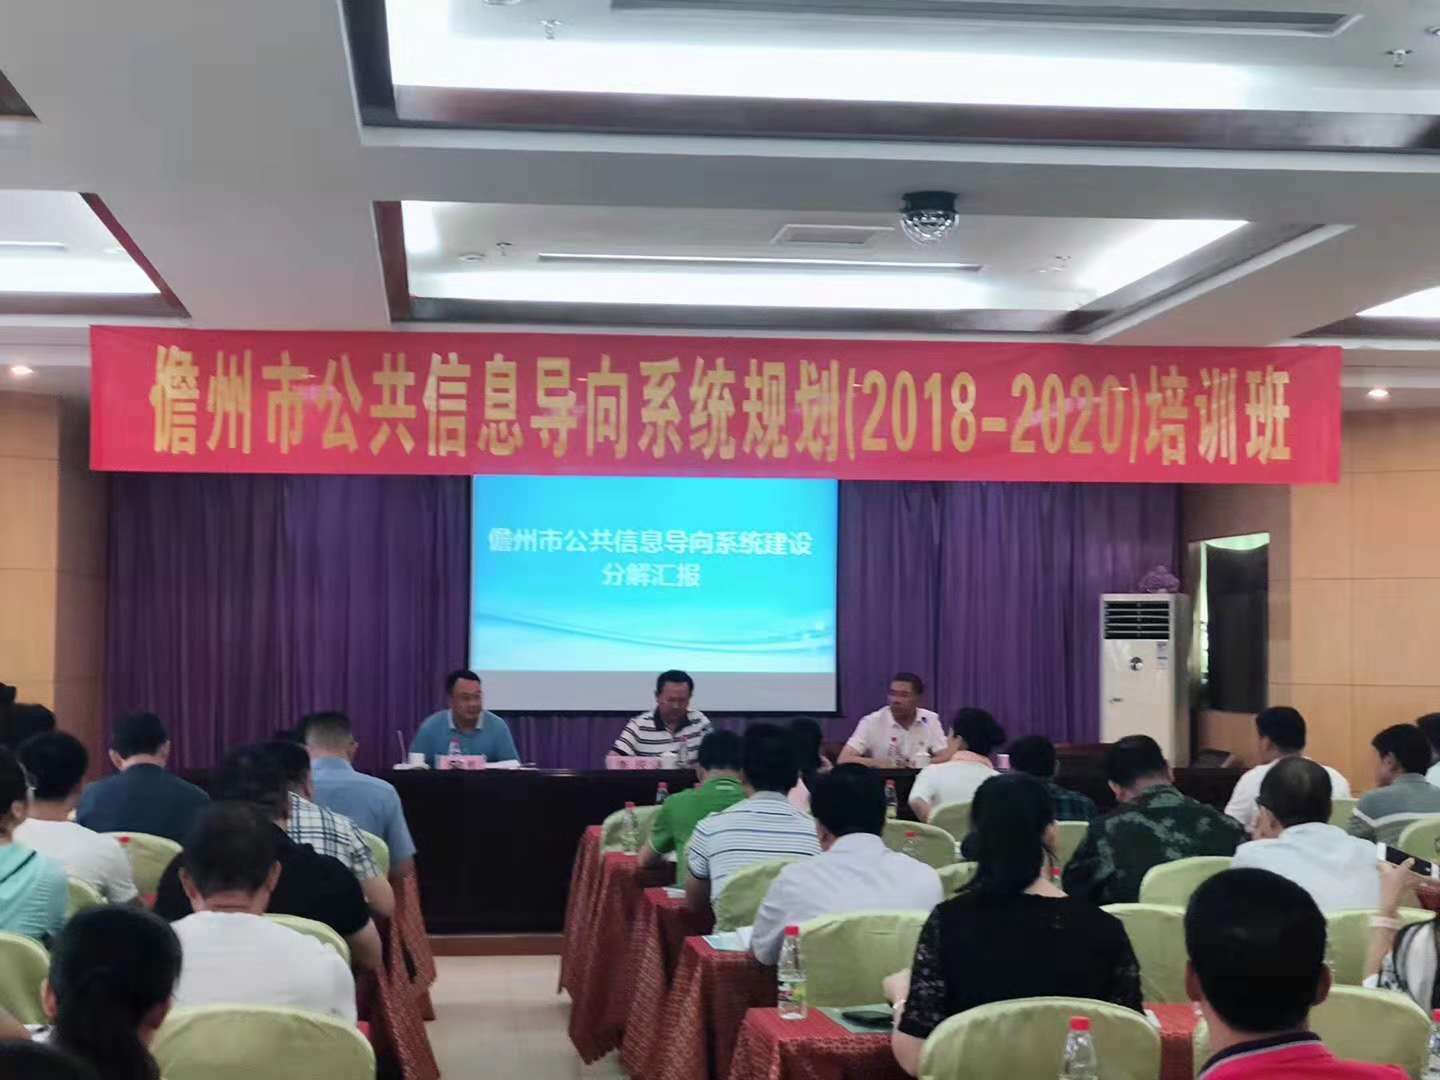 海南省标识行业协会受邀到海南省儋州市对公共信息导向系统进行培训指导